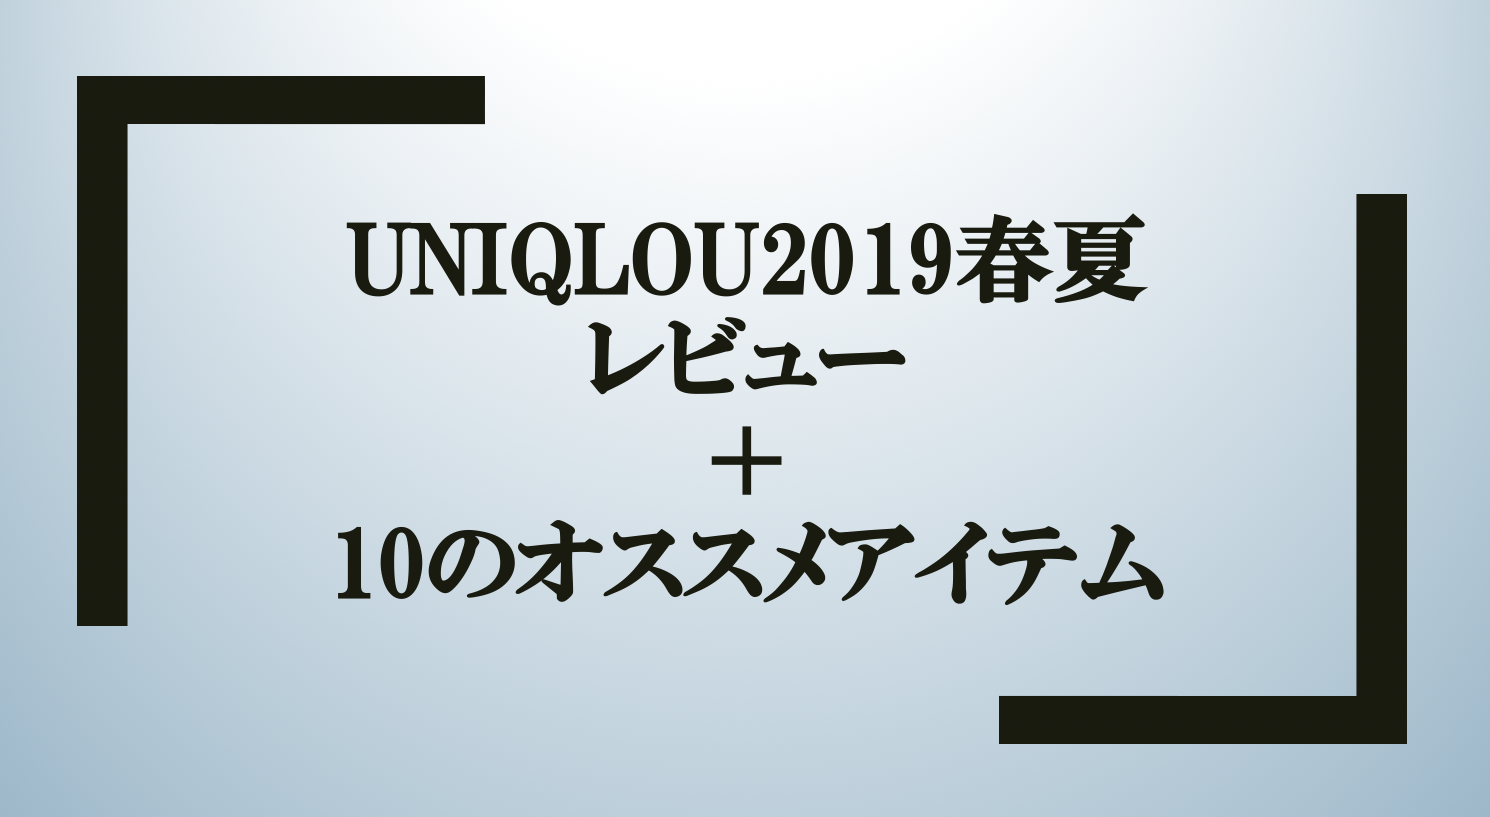 Uniqlou ユニクロユー 19春夏レビュー メンズのおすすめアイテムはどれ Small 背が低いからこそオシャレになれるブログ